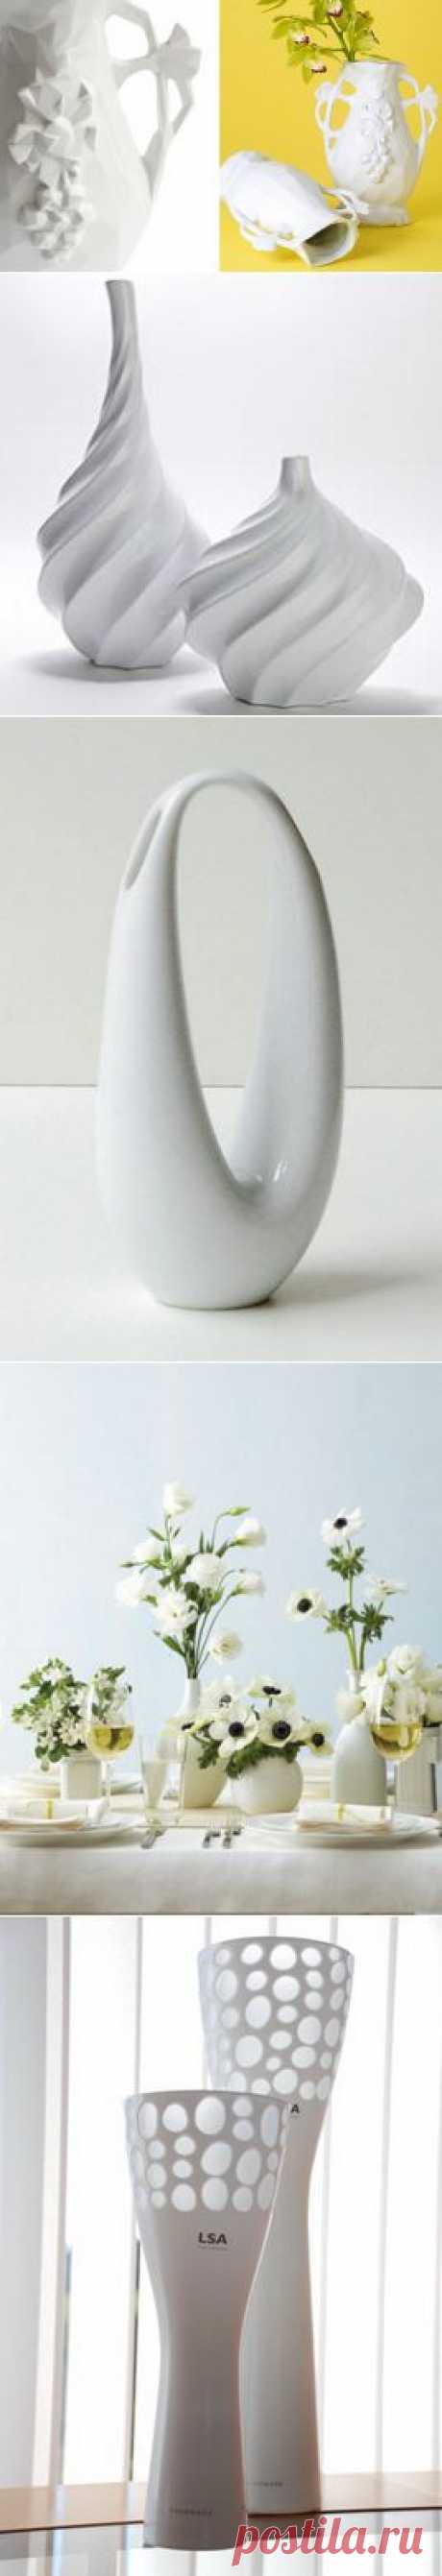 Белая ваза в интерьере - 40 идей с фото - - Элементы декора